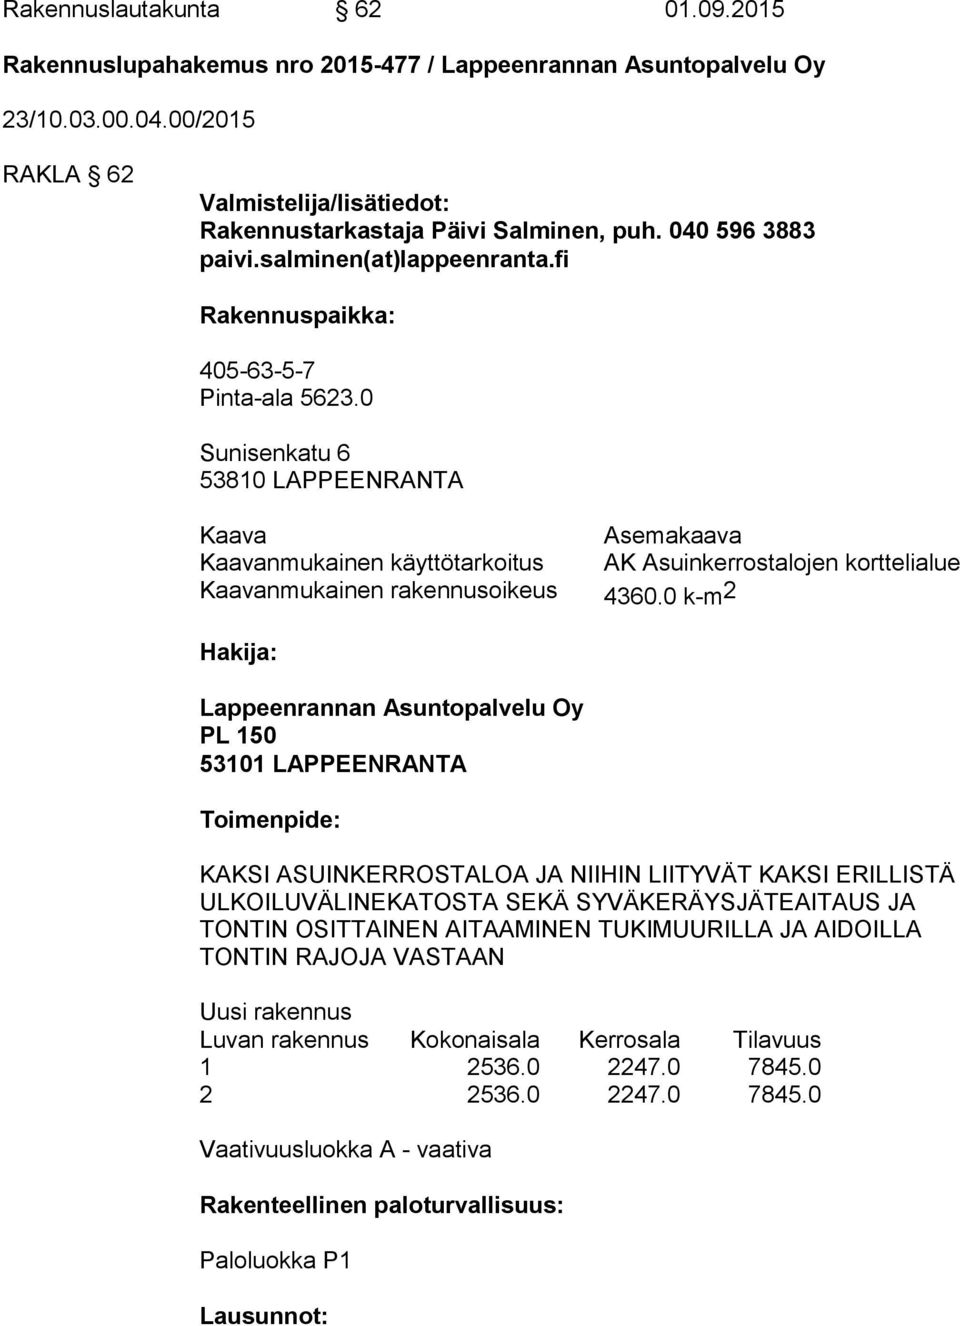 0 Sunisenkatu 6 53810 LAPPEENRANTA Kaava Asemakaava Kaavanmukainen käyttötarkoitus AK Asuinkerrostalojen korttelialue Kaavanmukainen rakennusoikeus 4360.